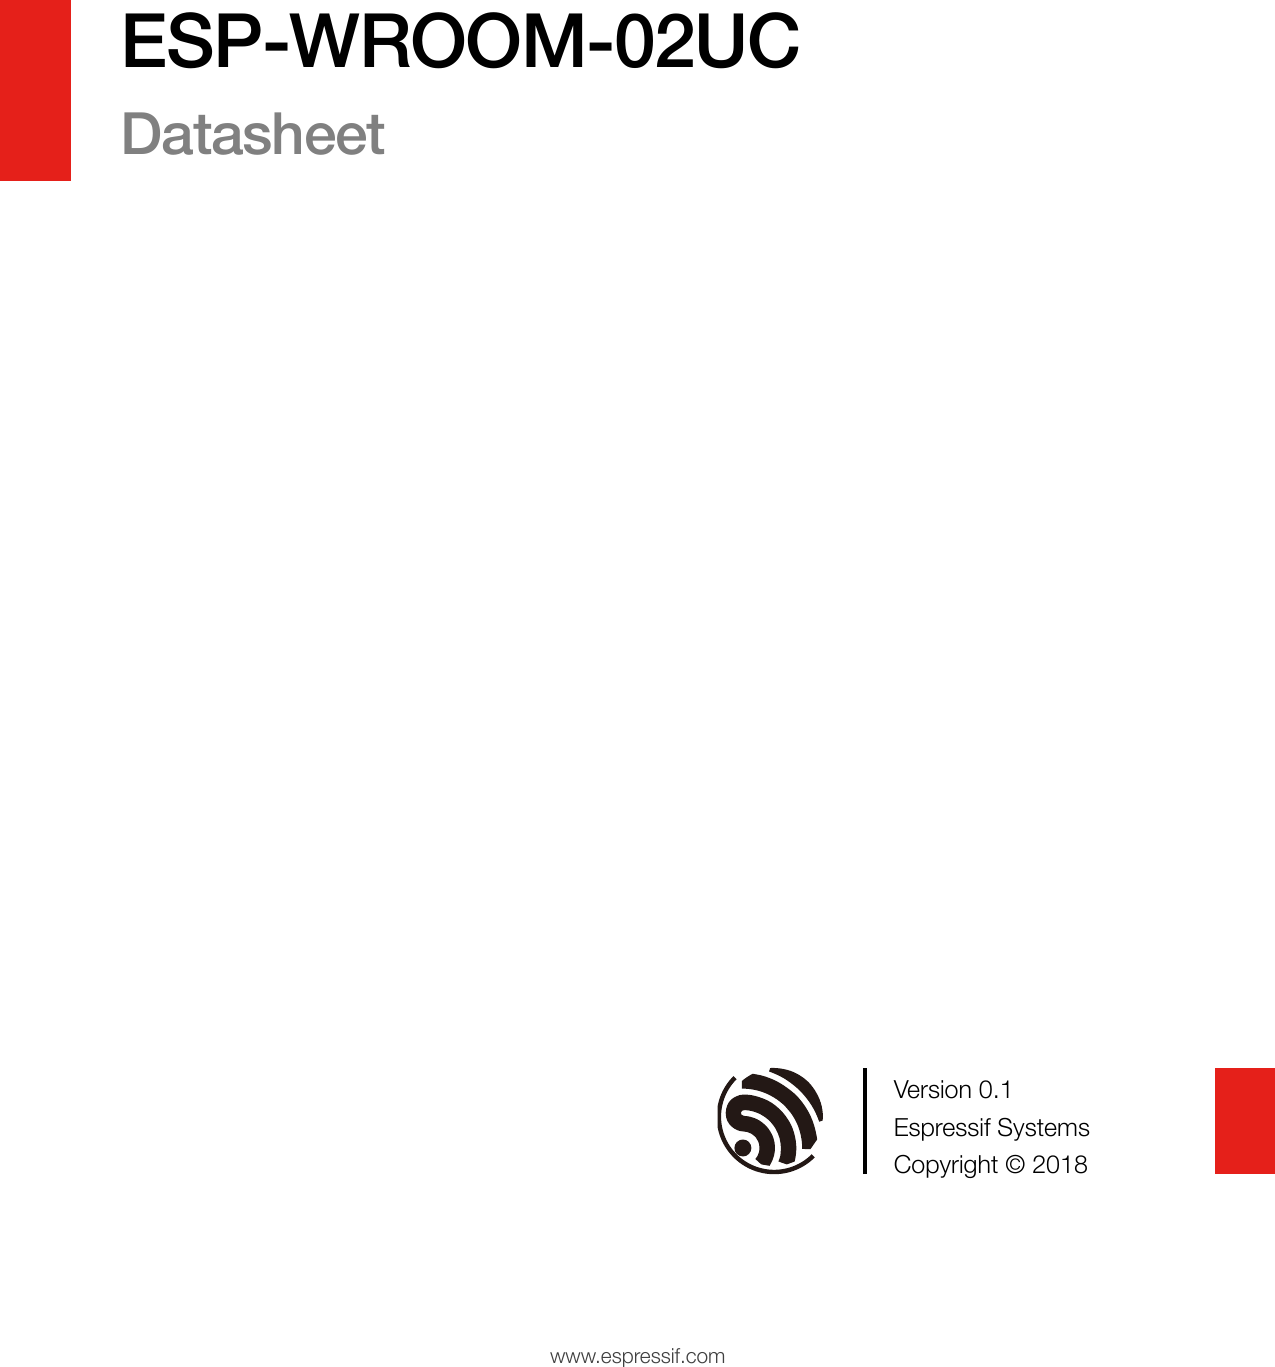 www.espressif.comVersion 0.1 Espressif Systems Copyright © 2018 ESP-WROOM-02UC Datasheet